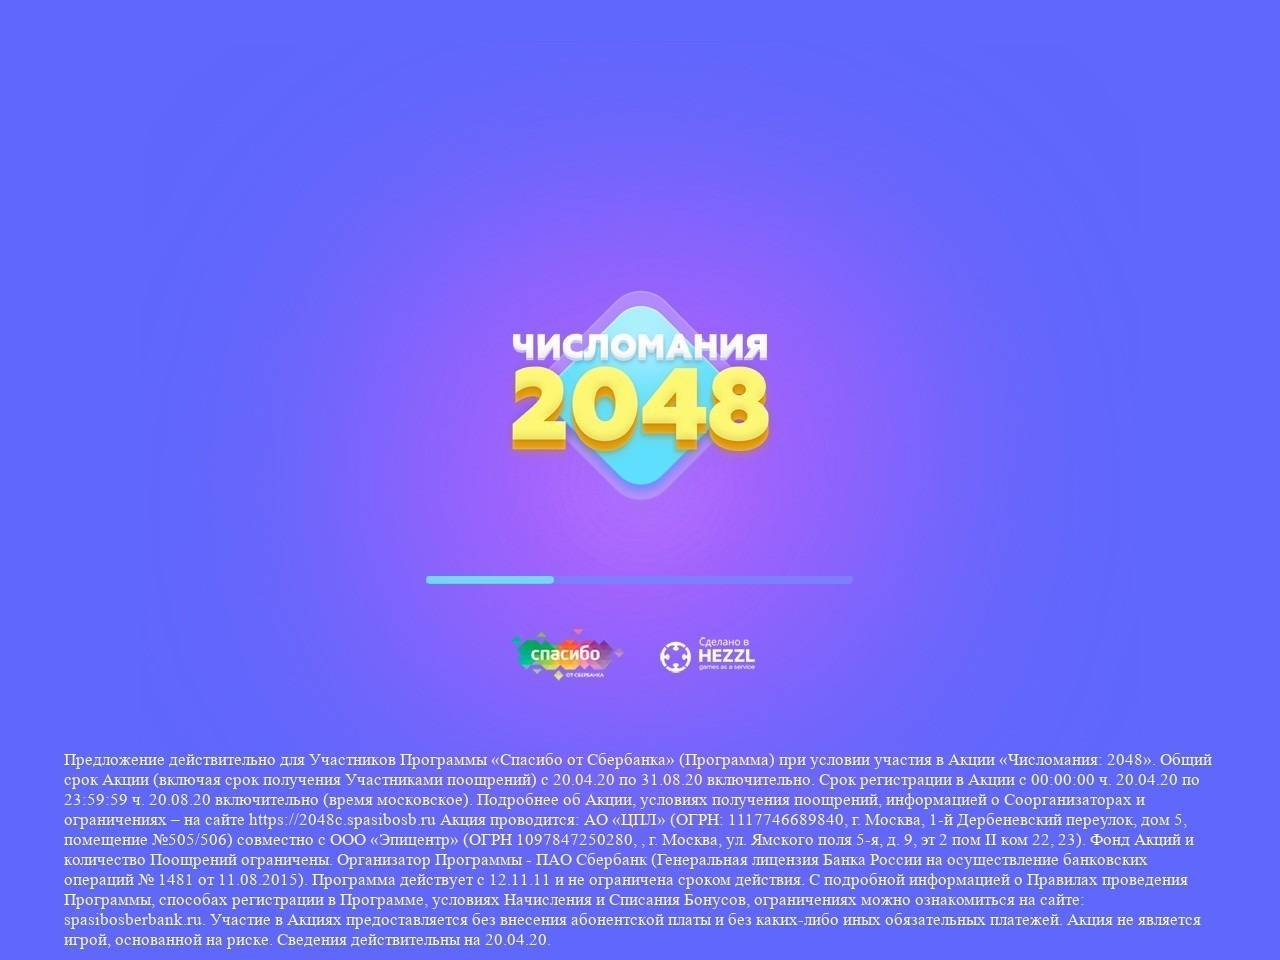  2048c.spasibosb.ru регистрация 